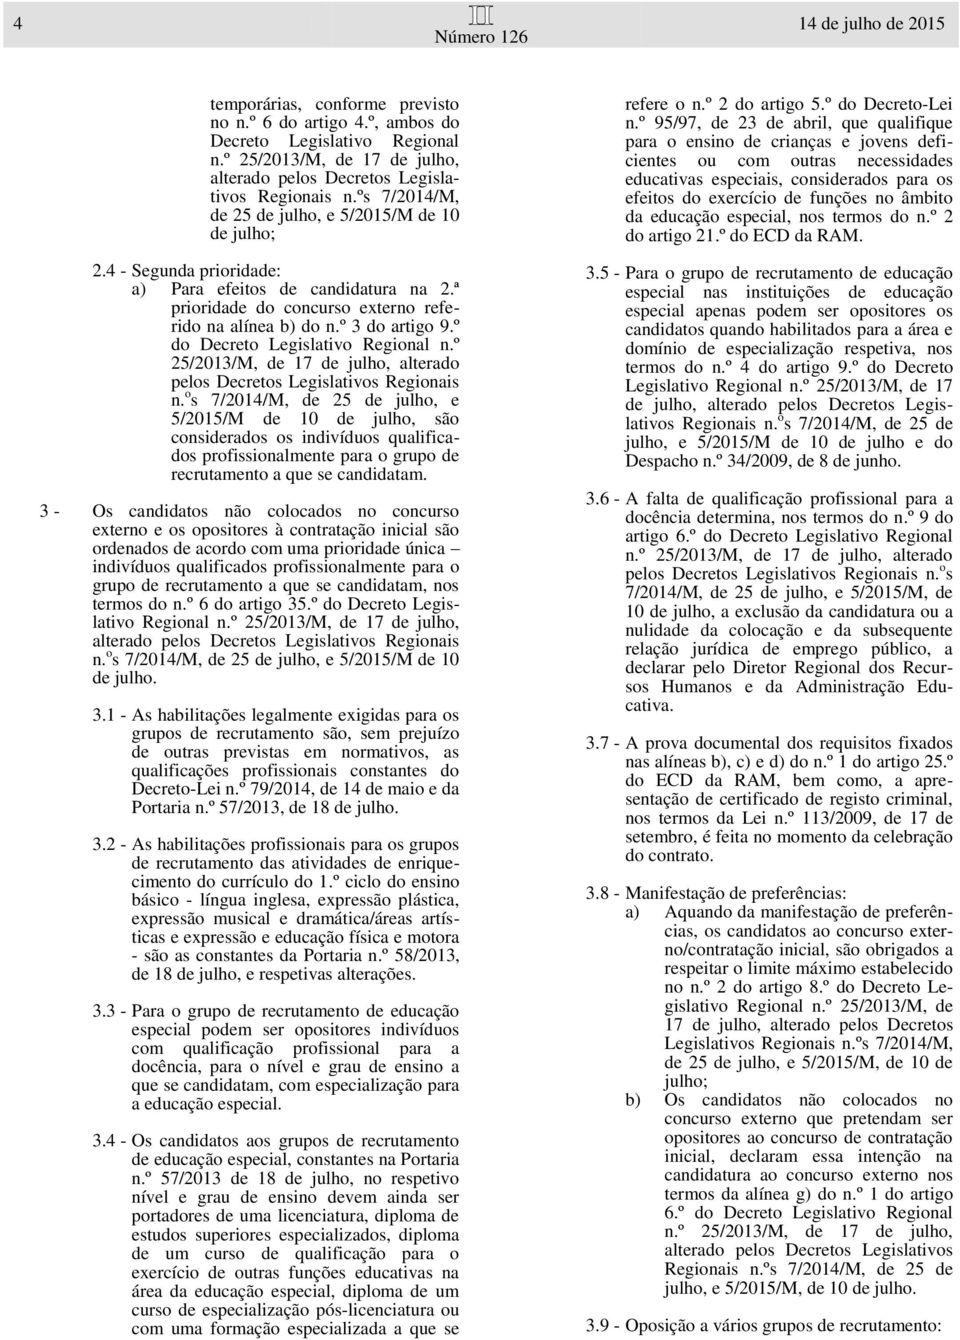 º do Decreto Legislativo Regional n.º 25/2013/M, de 17 de julho, alterado pelos Decretos Legislativos Regionais n.